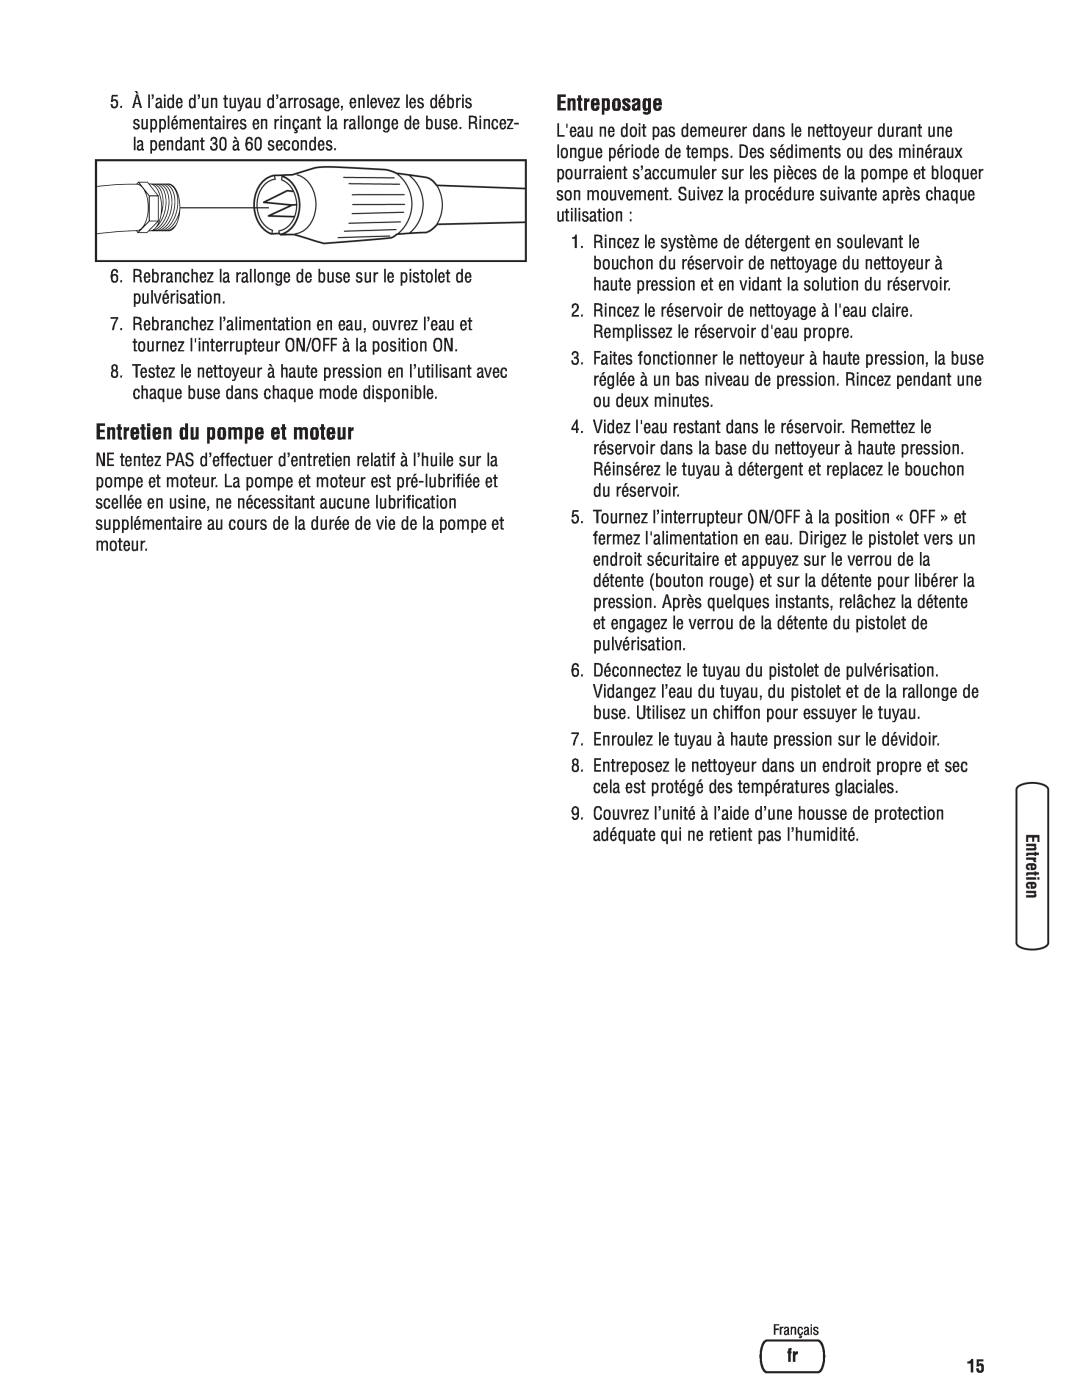 Briggs & Stratton Electric Pressure Washer manual Entretien du pompe et moteur, Entreposage 